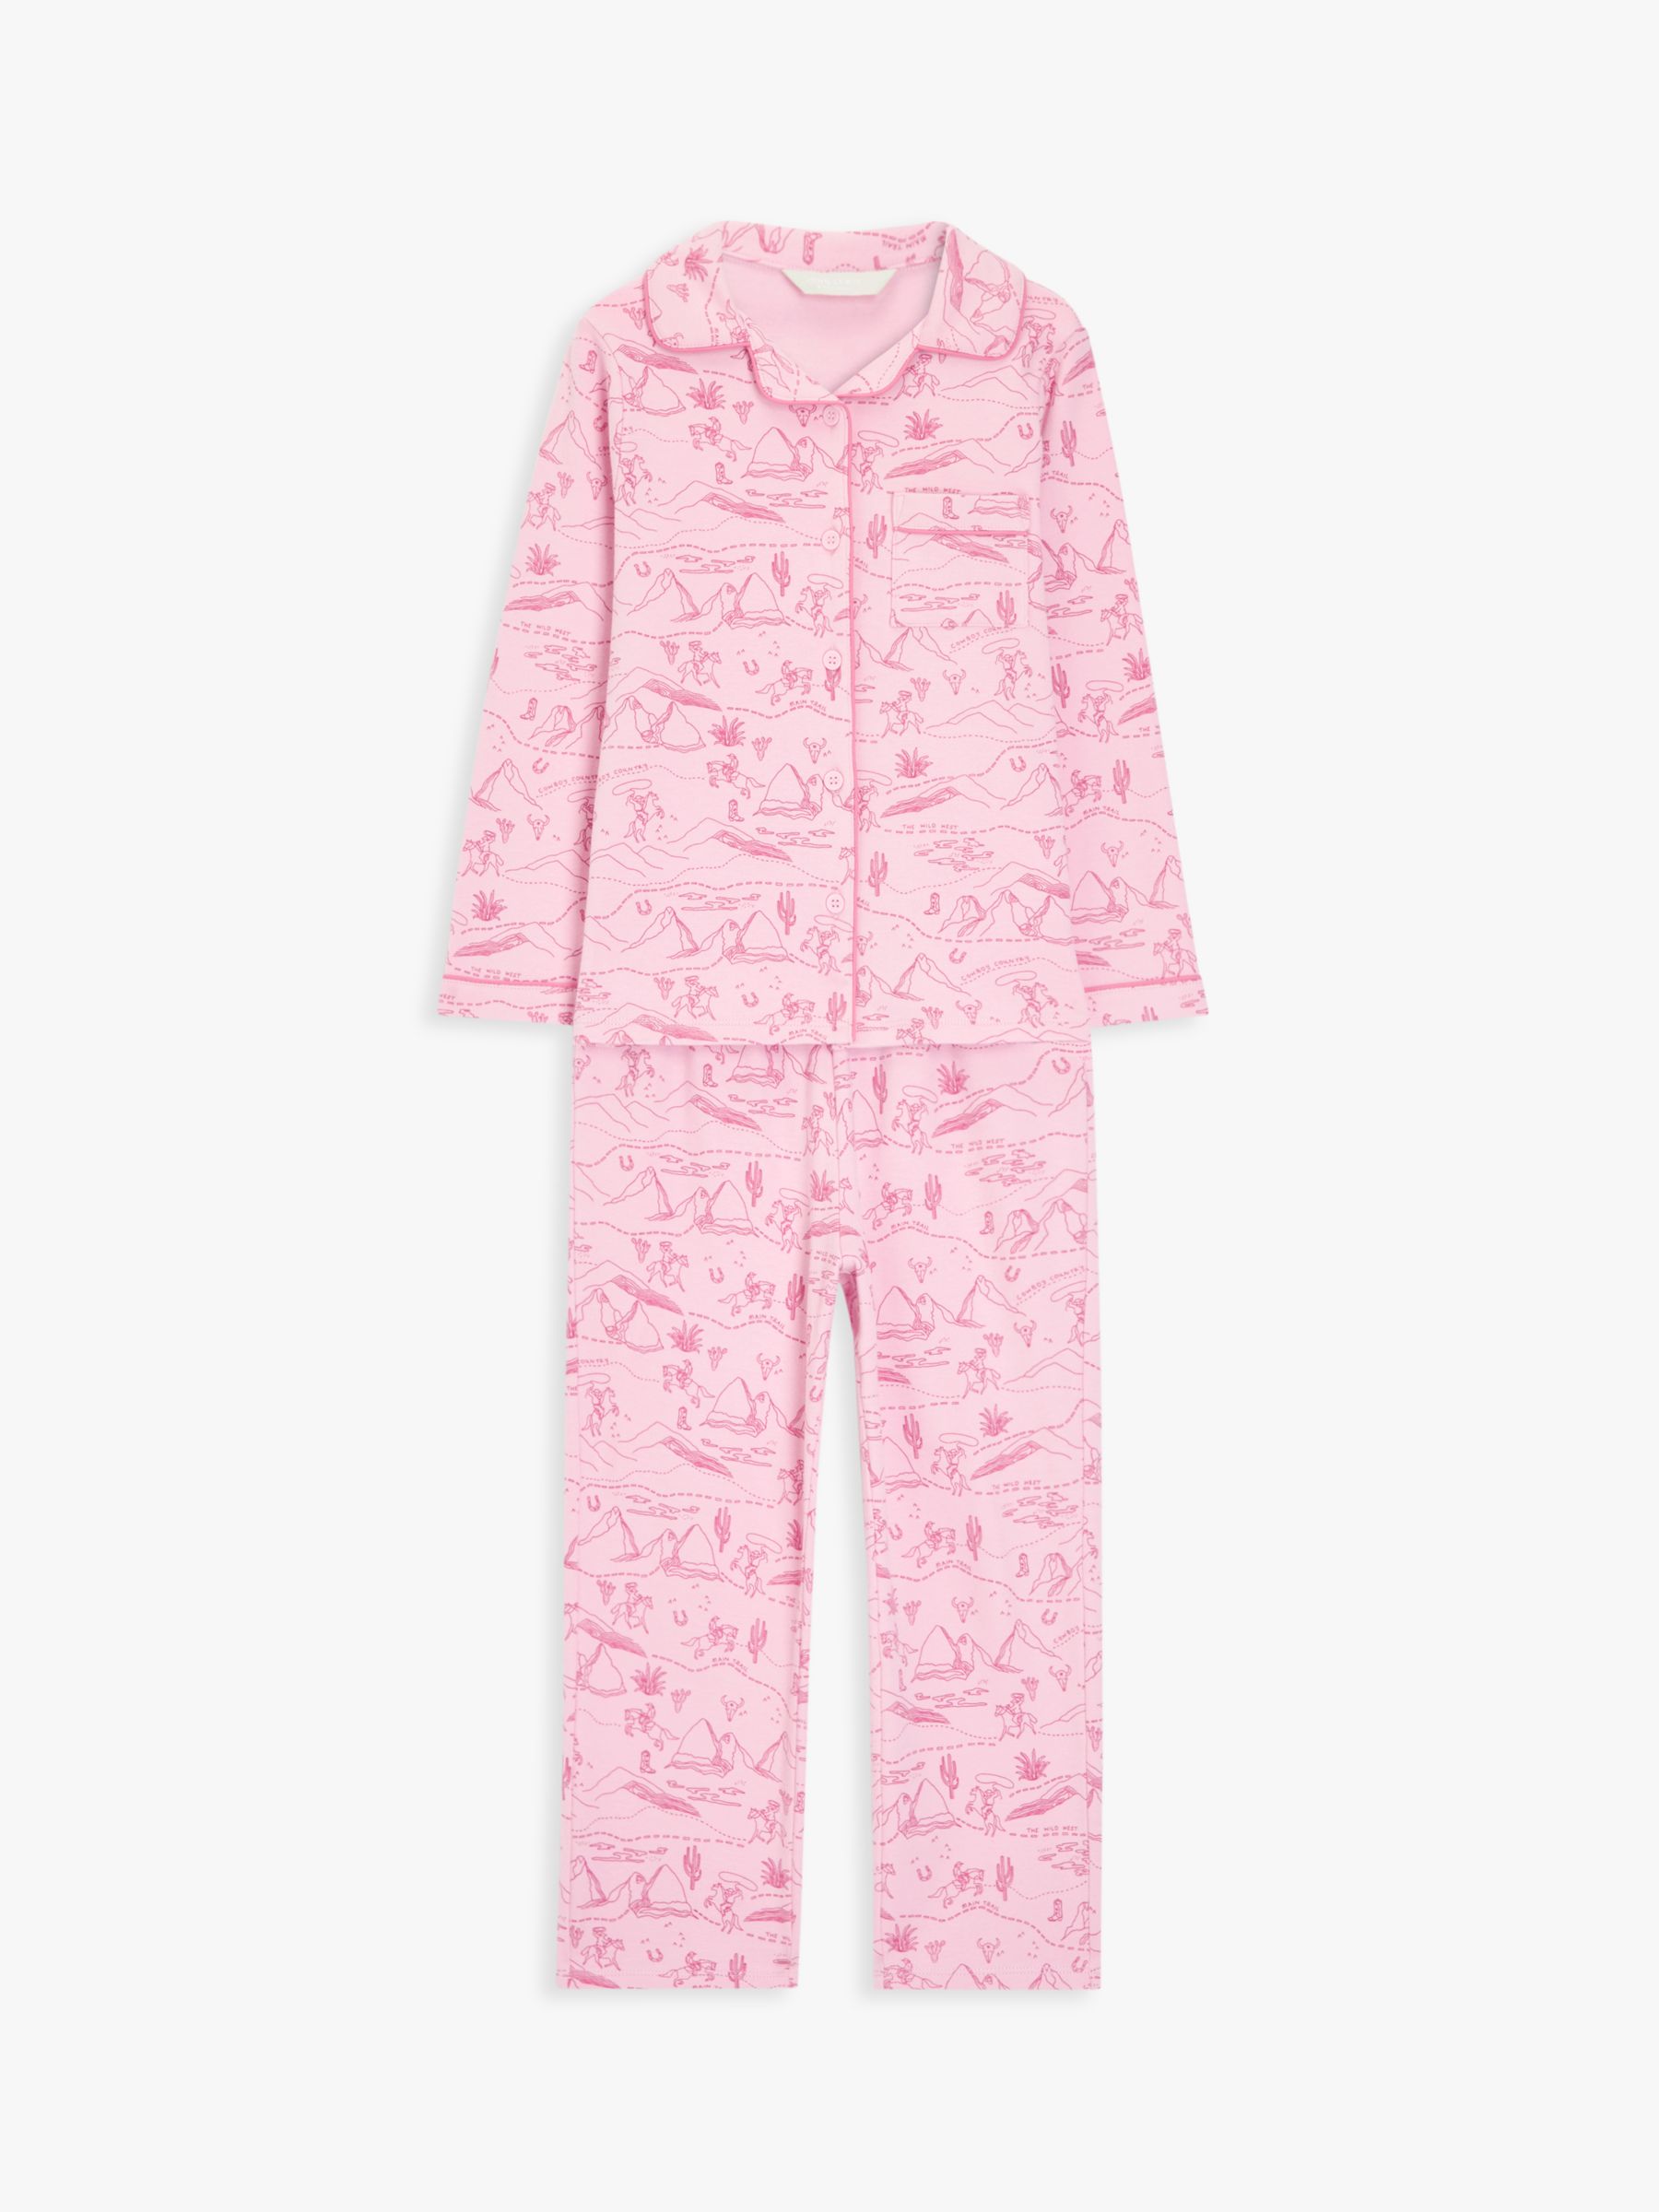 John Lewis Kids' Linear Jersey Pyjama Set, Pink, 2 years